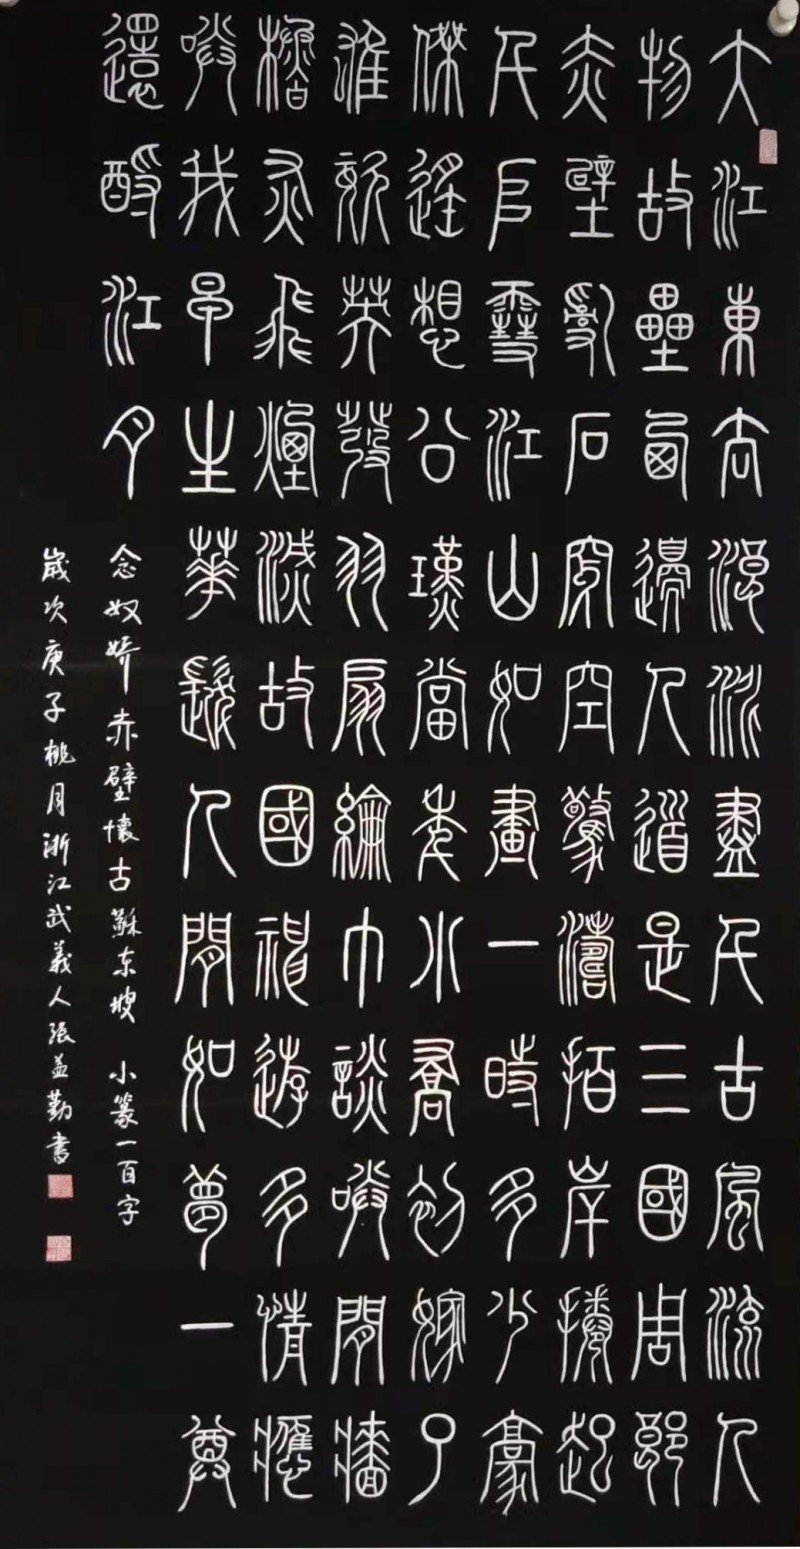 中国楹联学会中宣盛世文化艺术交流中心书画风采展示——张益勤